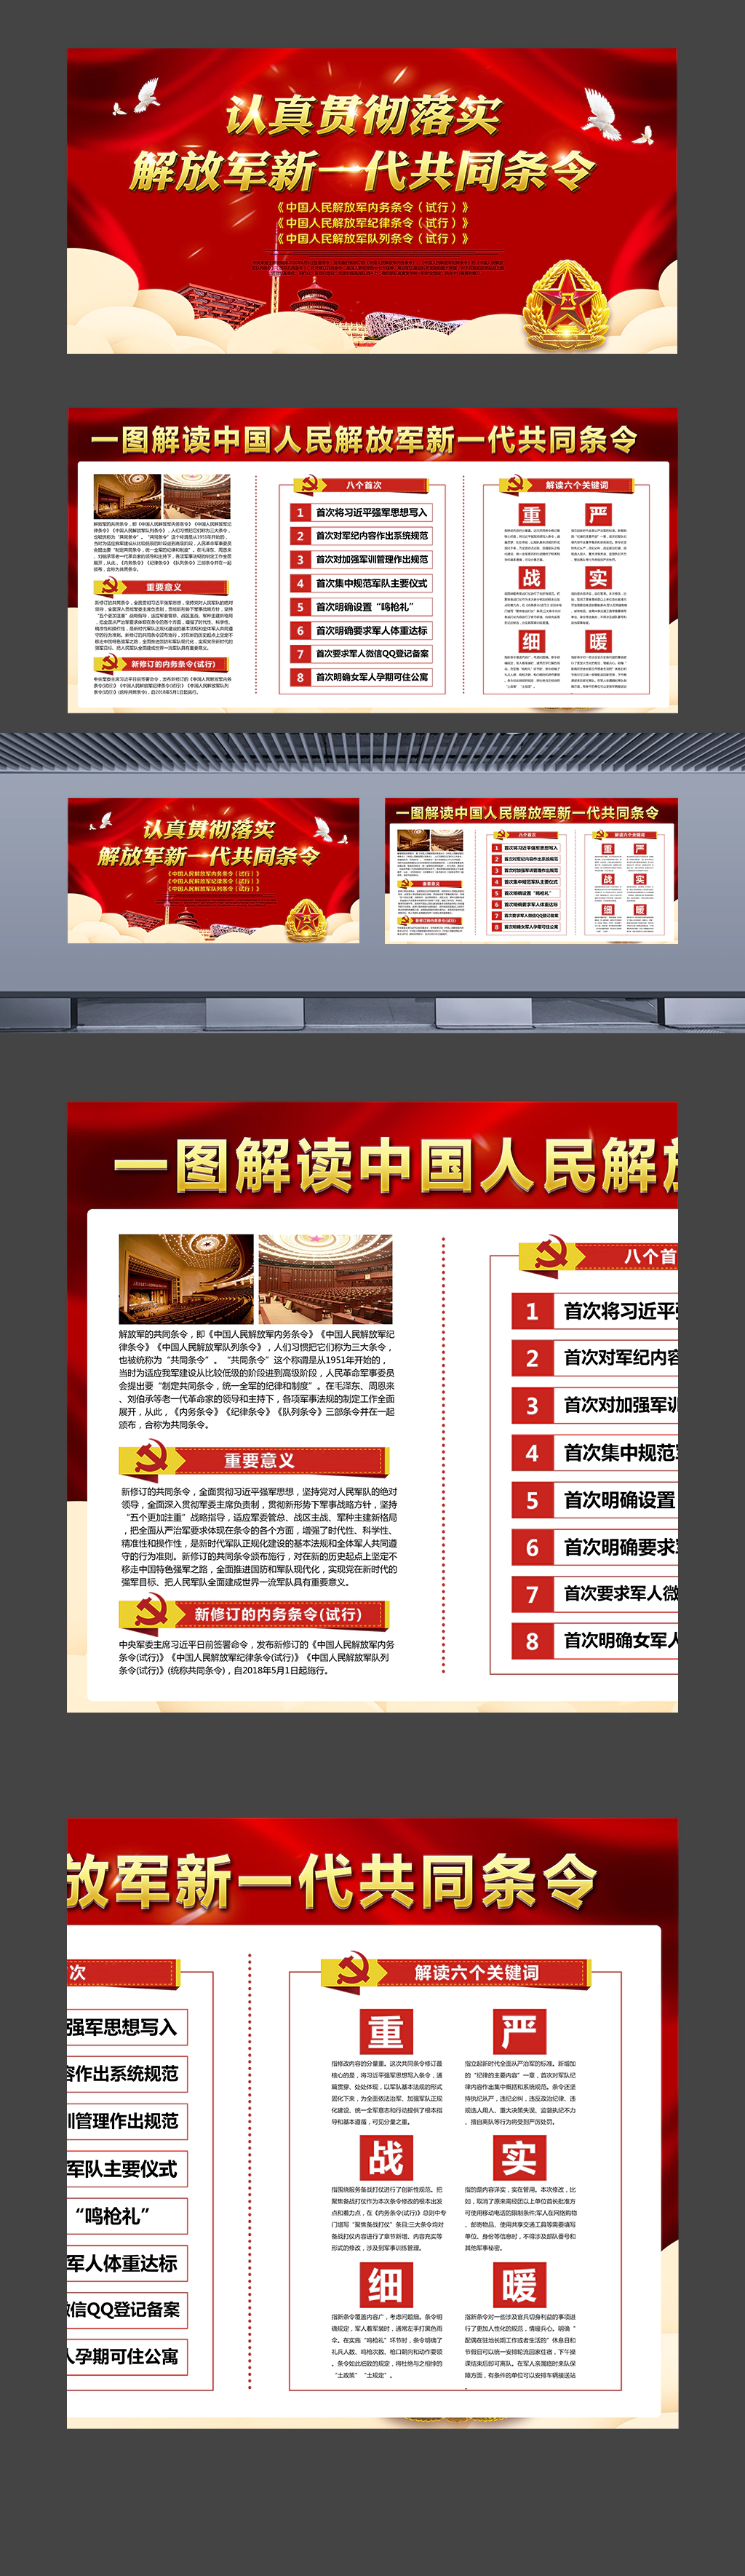 一图解读中国人民解放军新一代共同条令横版海报展板